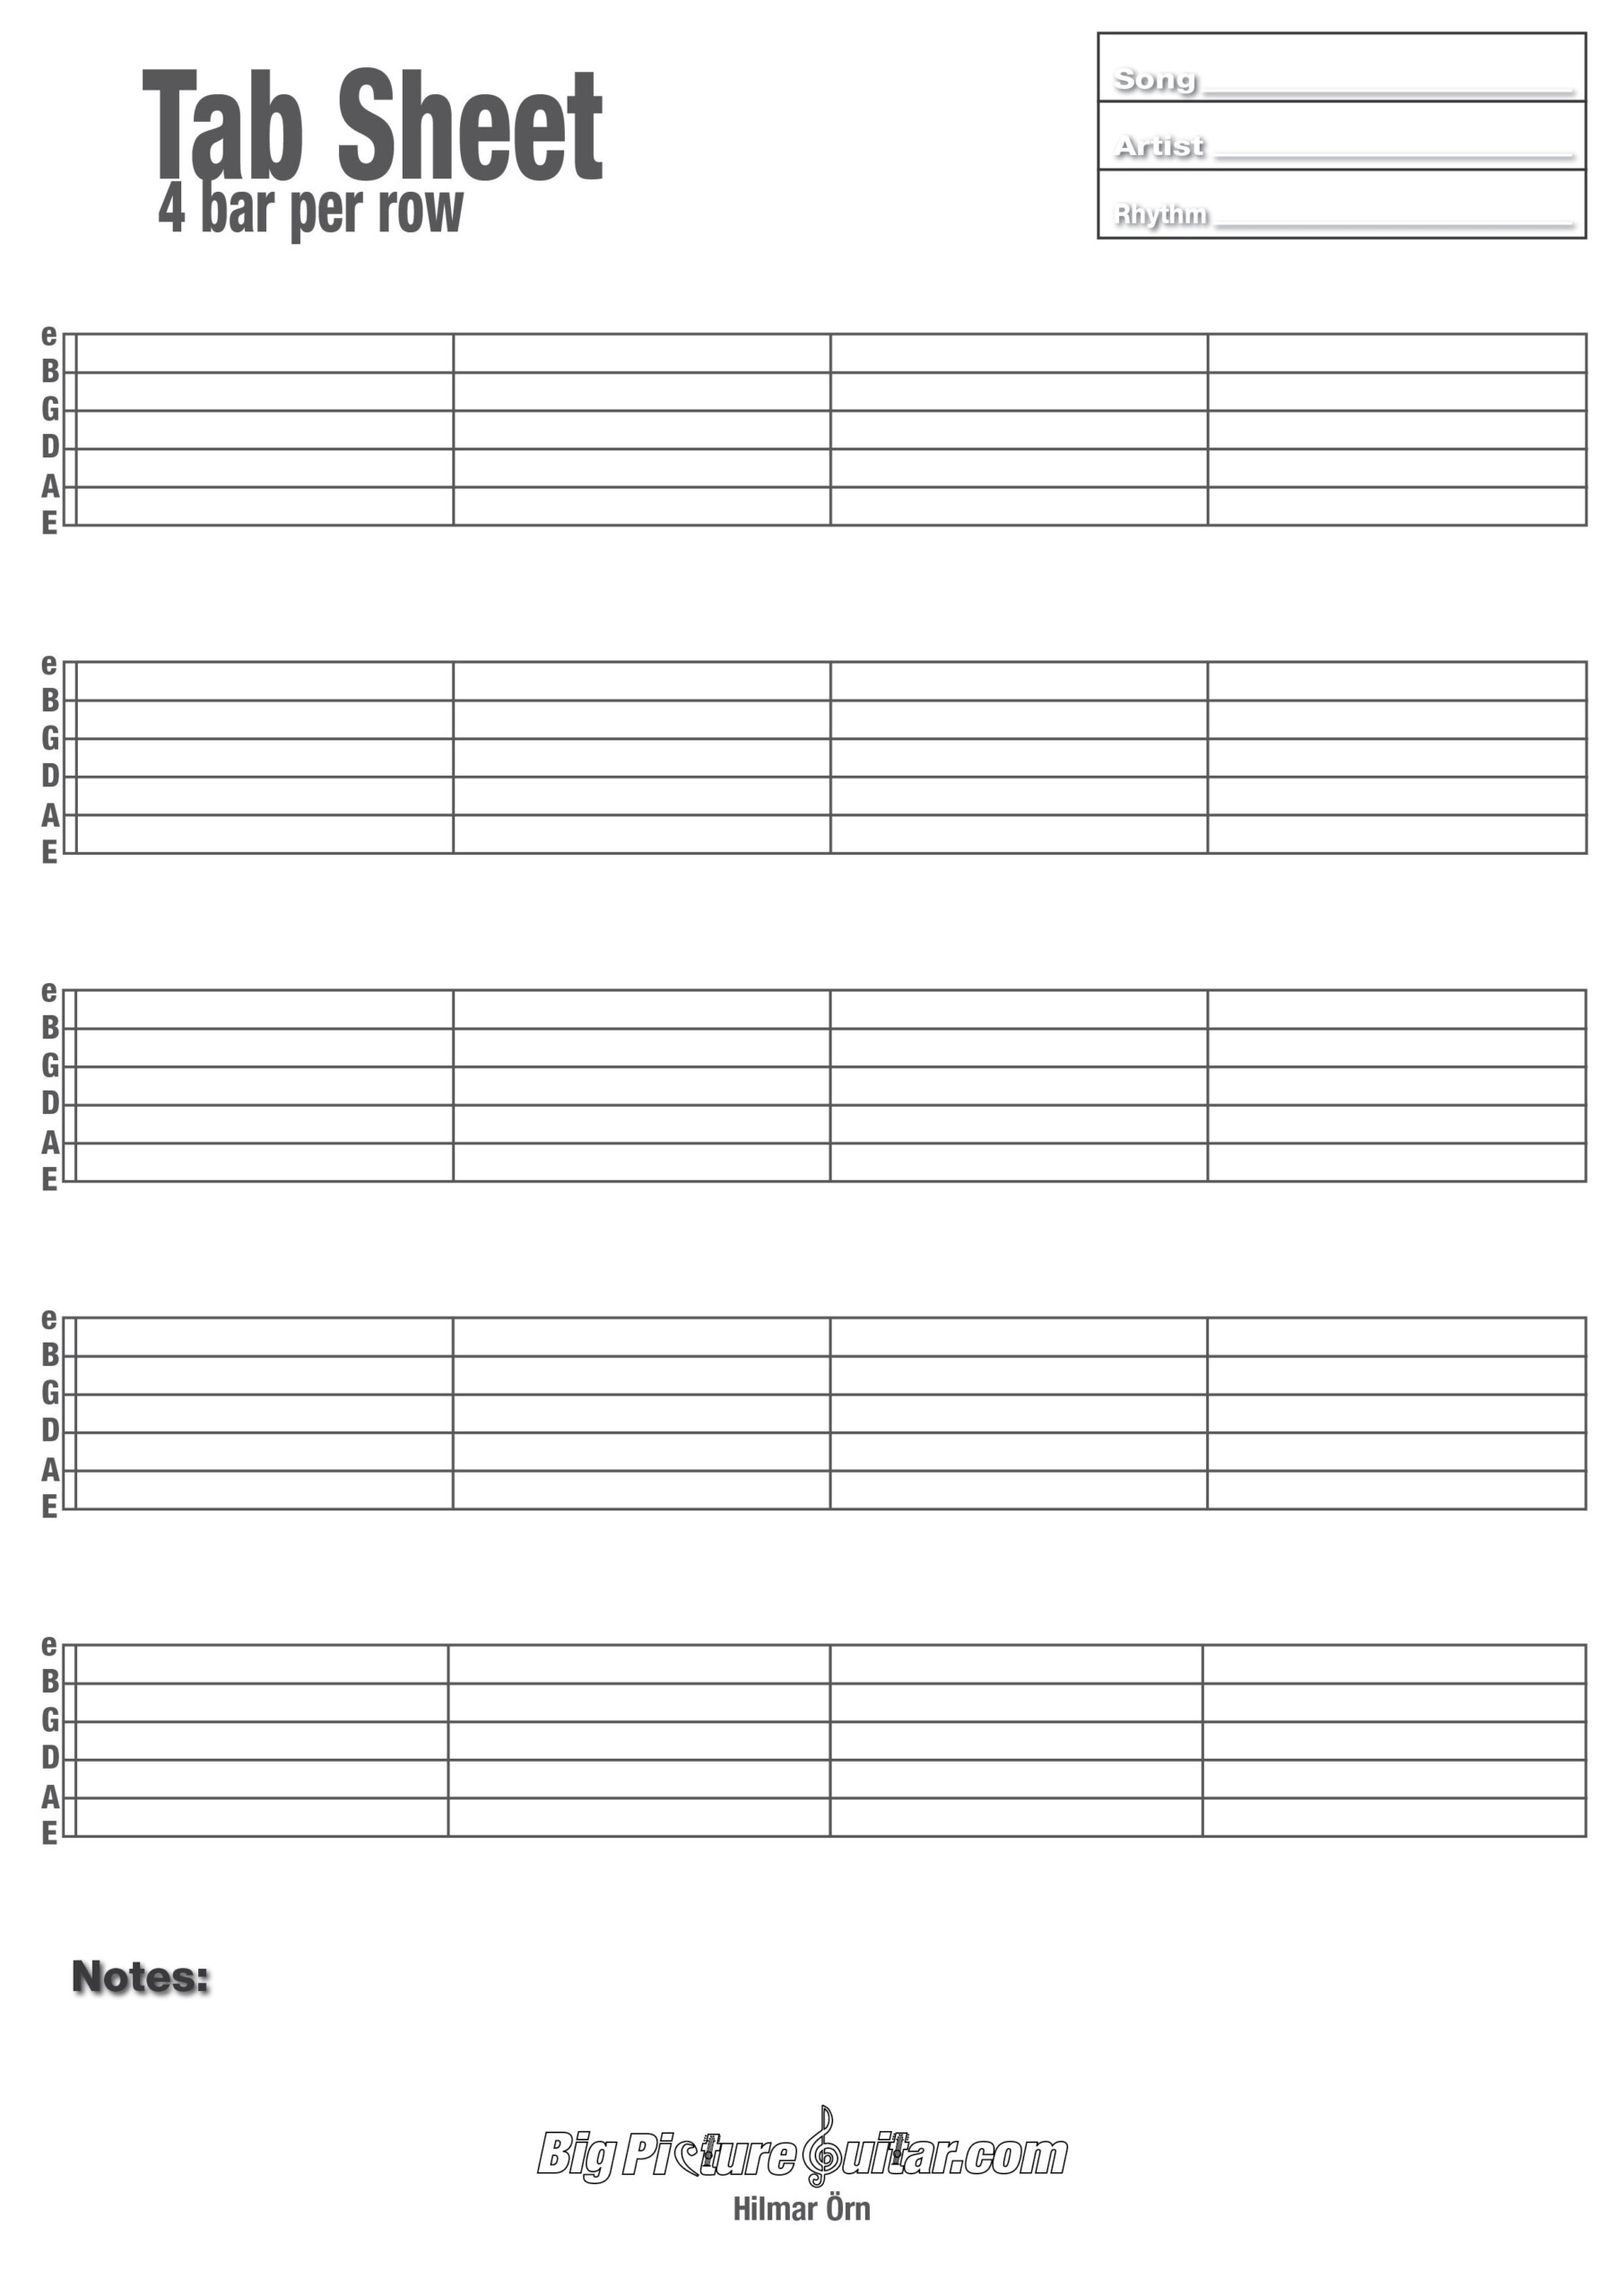 Printable Blank Guitar Tab Sheets Guitar Tabs Songs Guitar Tabs